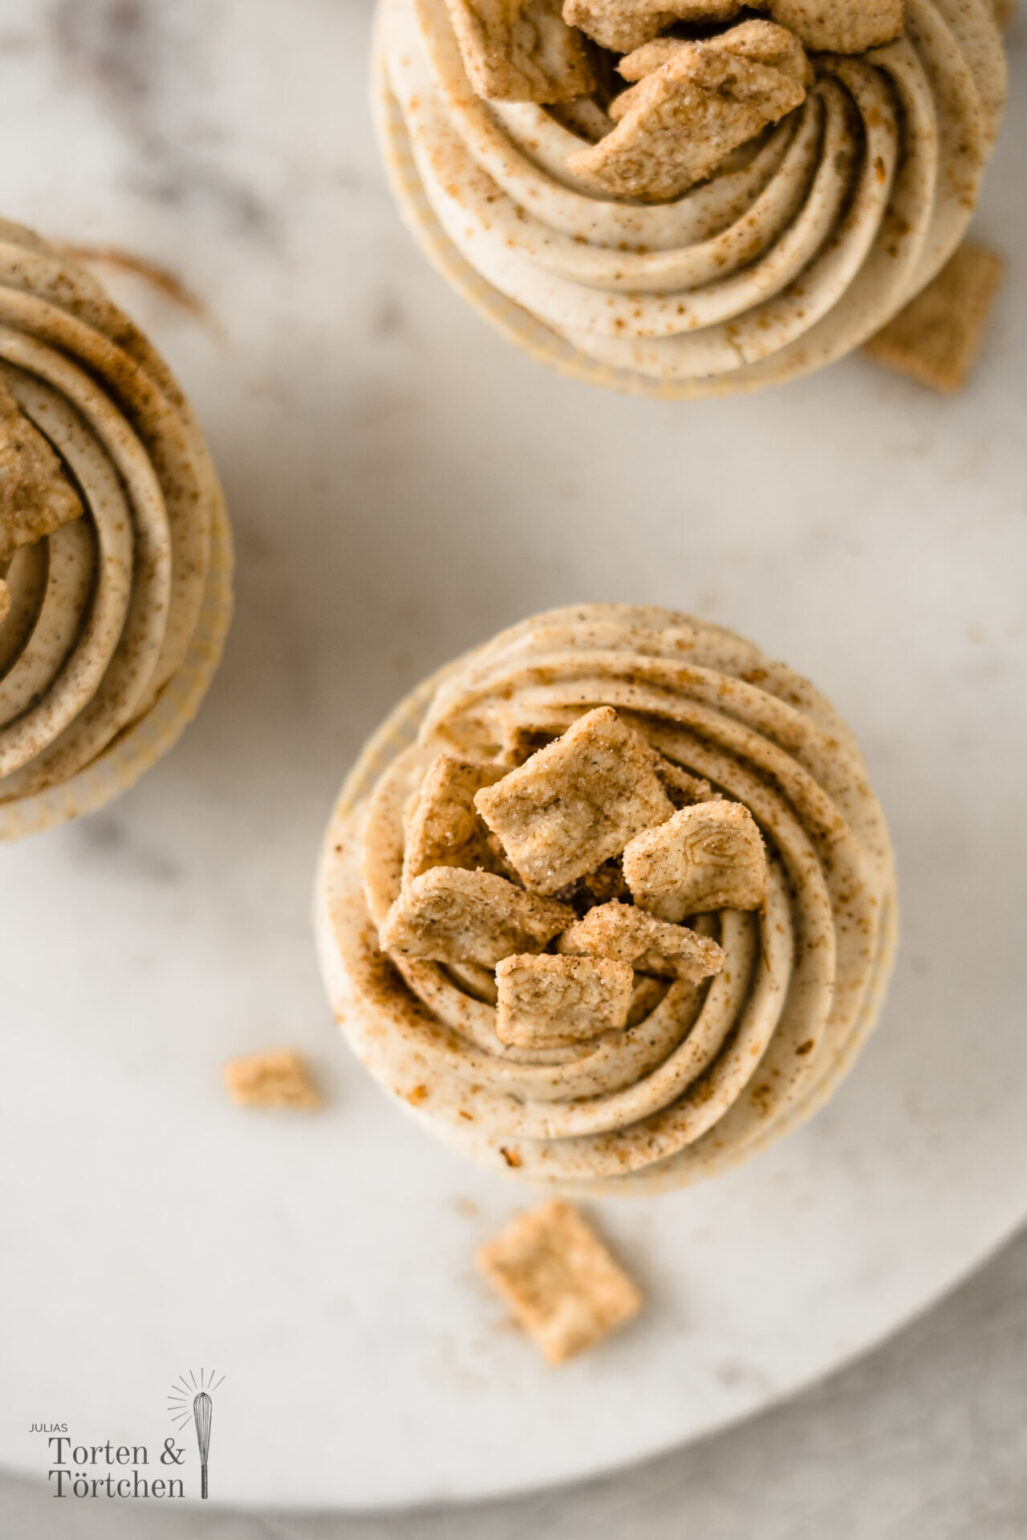 Einfaches Rezept für saftige Cini Mini Cupcake / Zimt Cupcakes mit Frischkäse Mascarpone Topping ohne Buttercreme. #Backen #Kuchen #Cupcakes #Zimt #Torte #Muffins